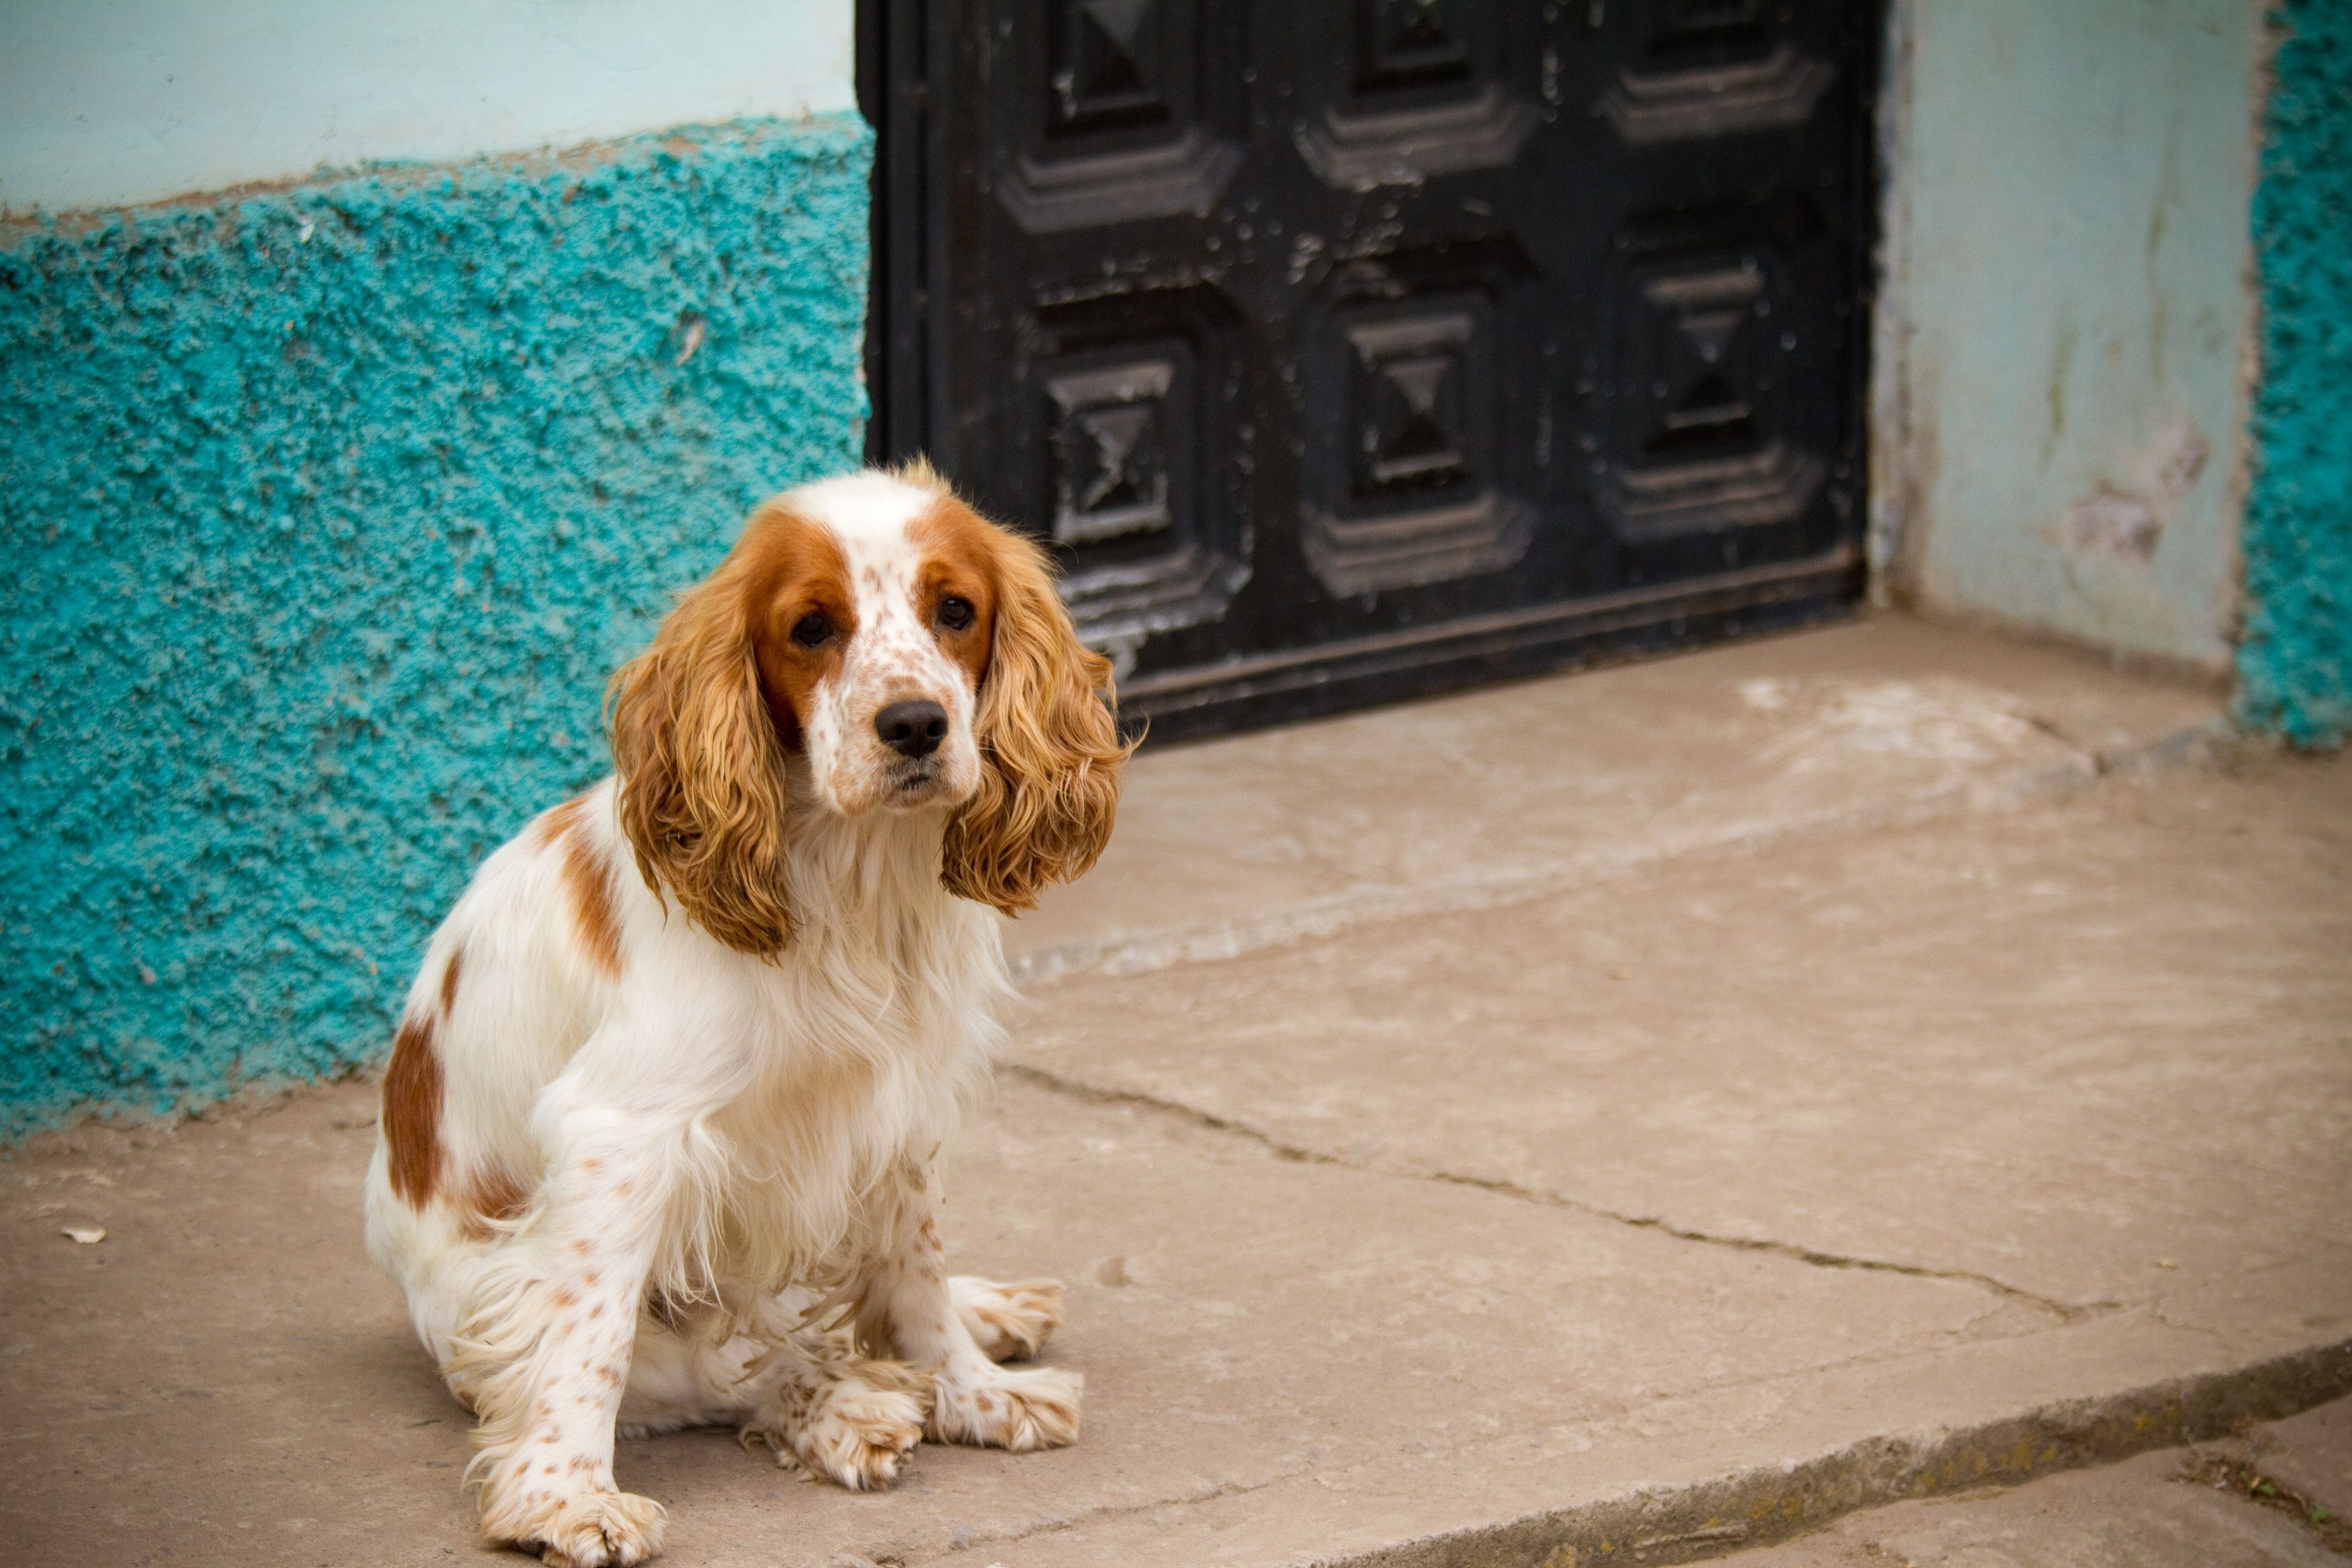 A dog sitting by a doorway on a street in Ecuador.